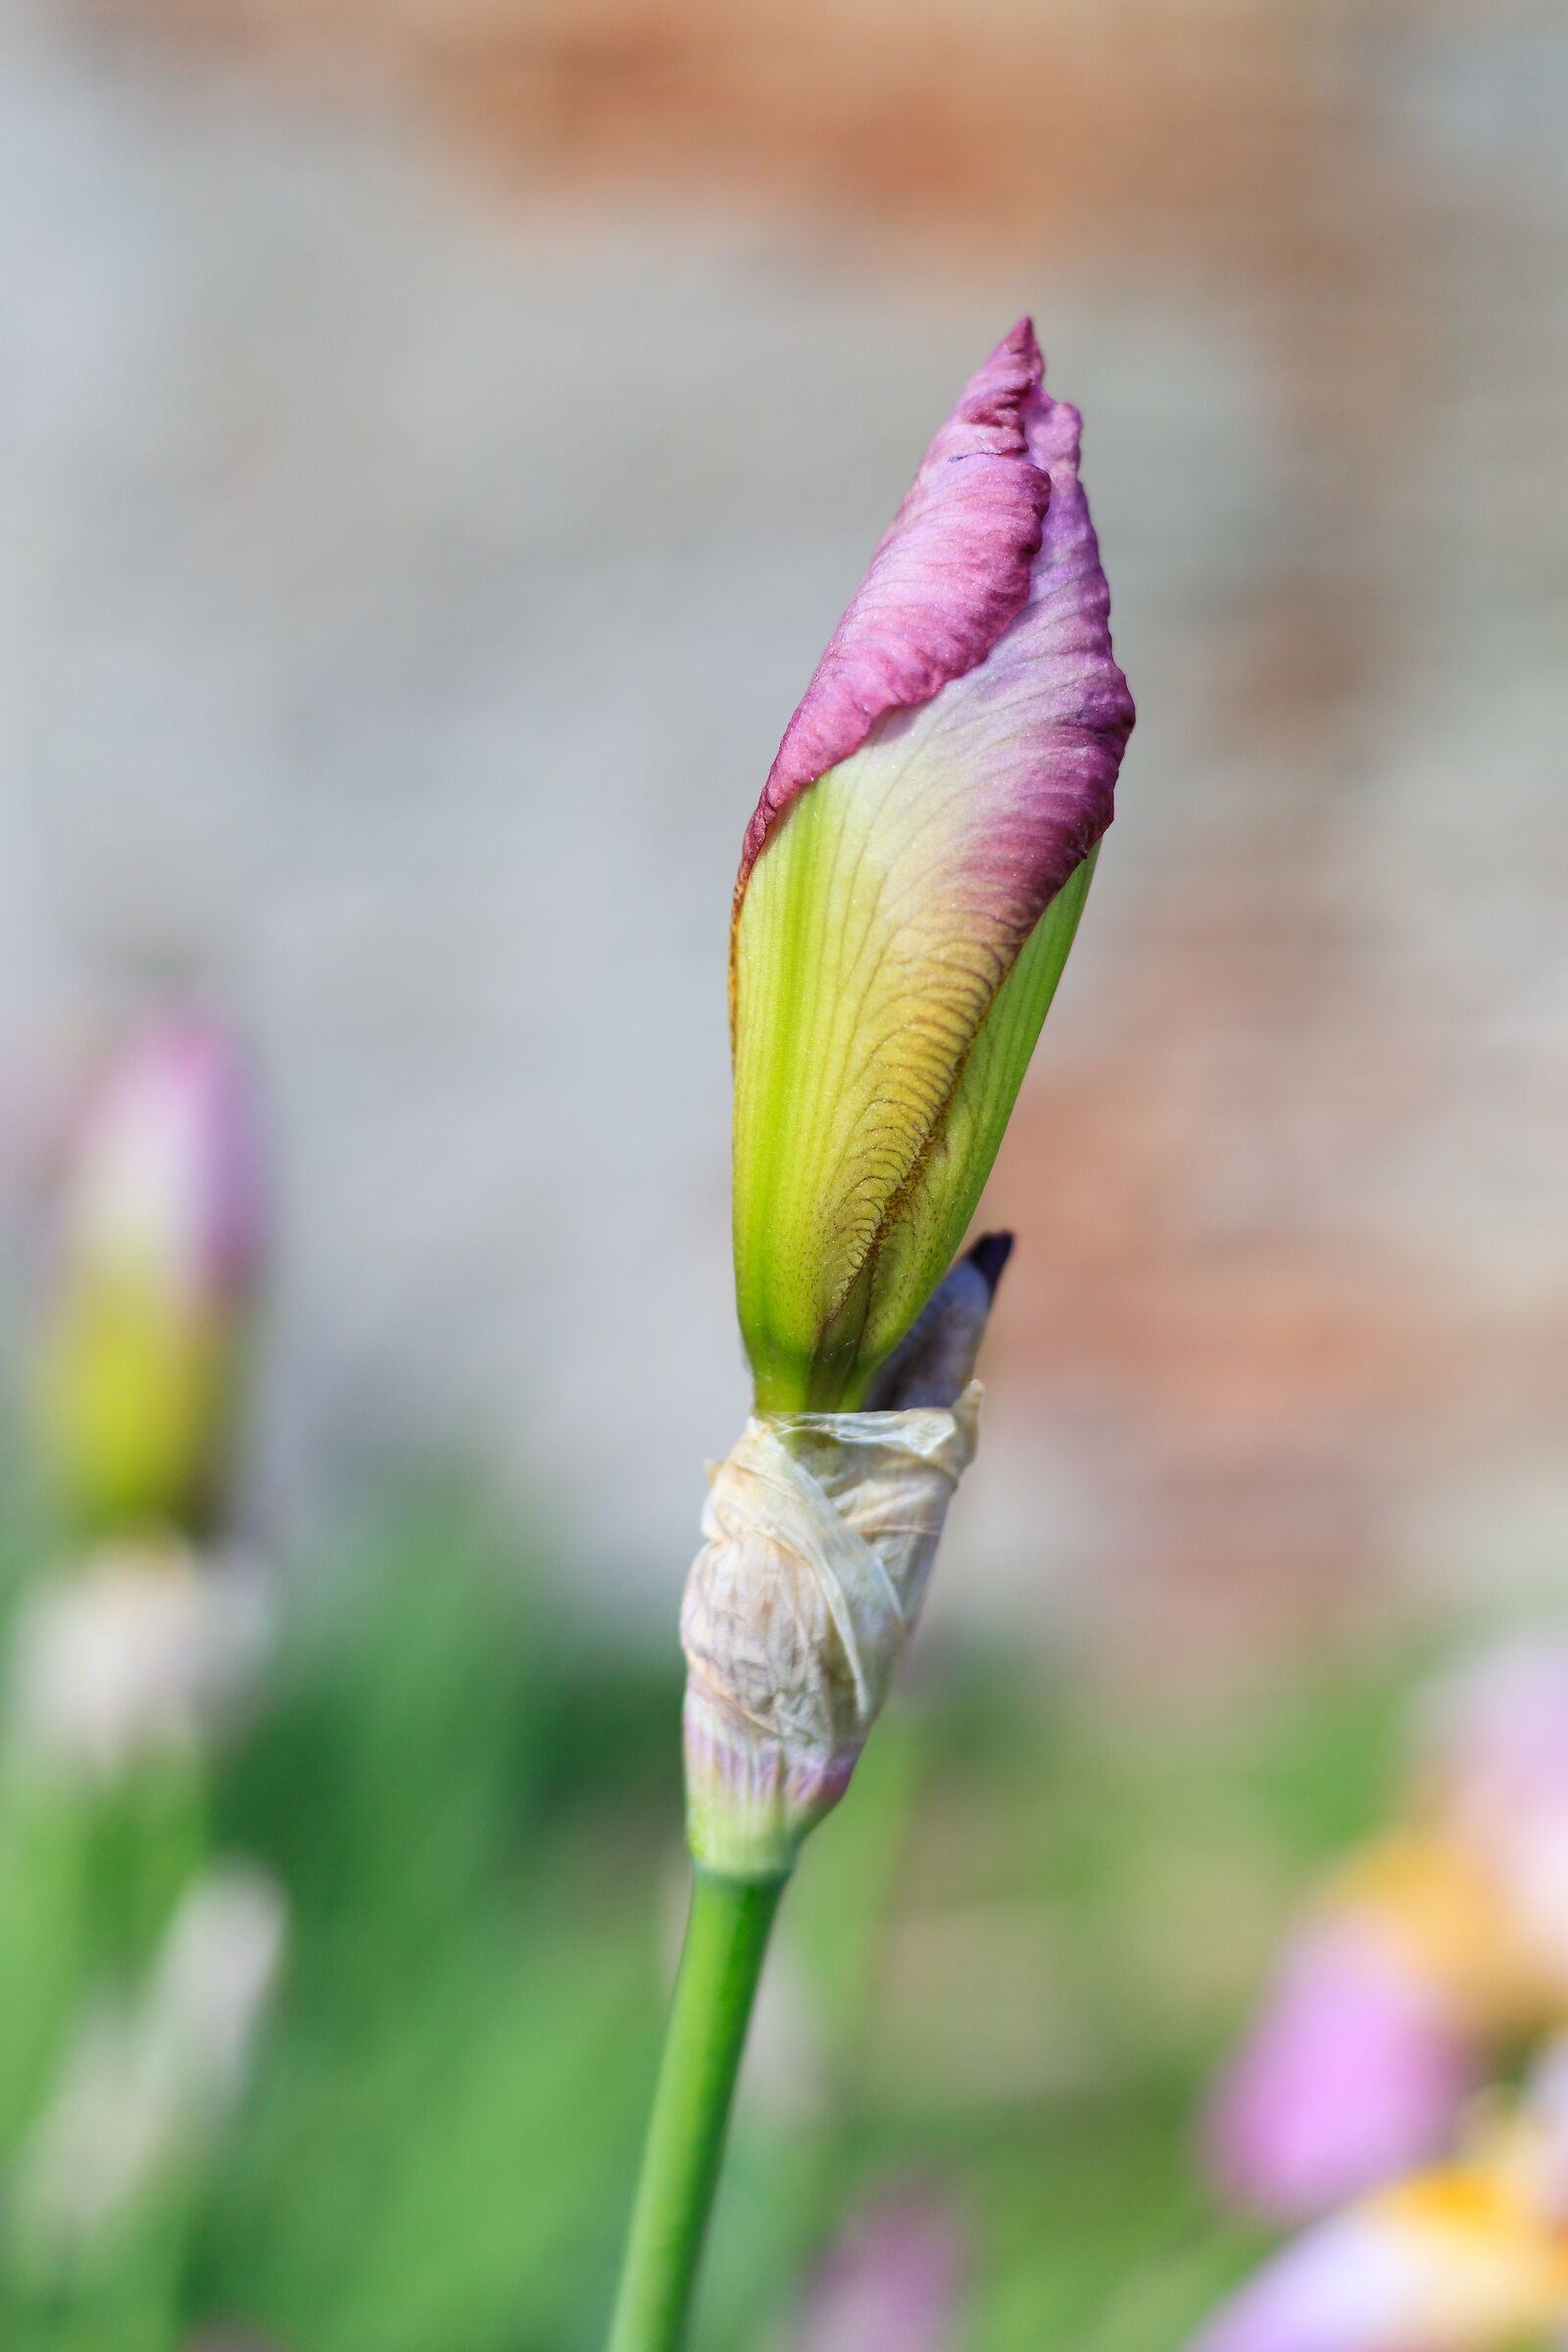 Iris Greatsword in the garden...